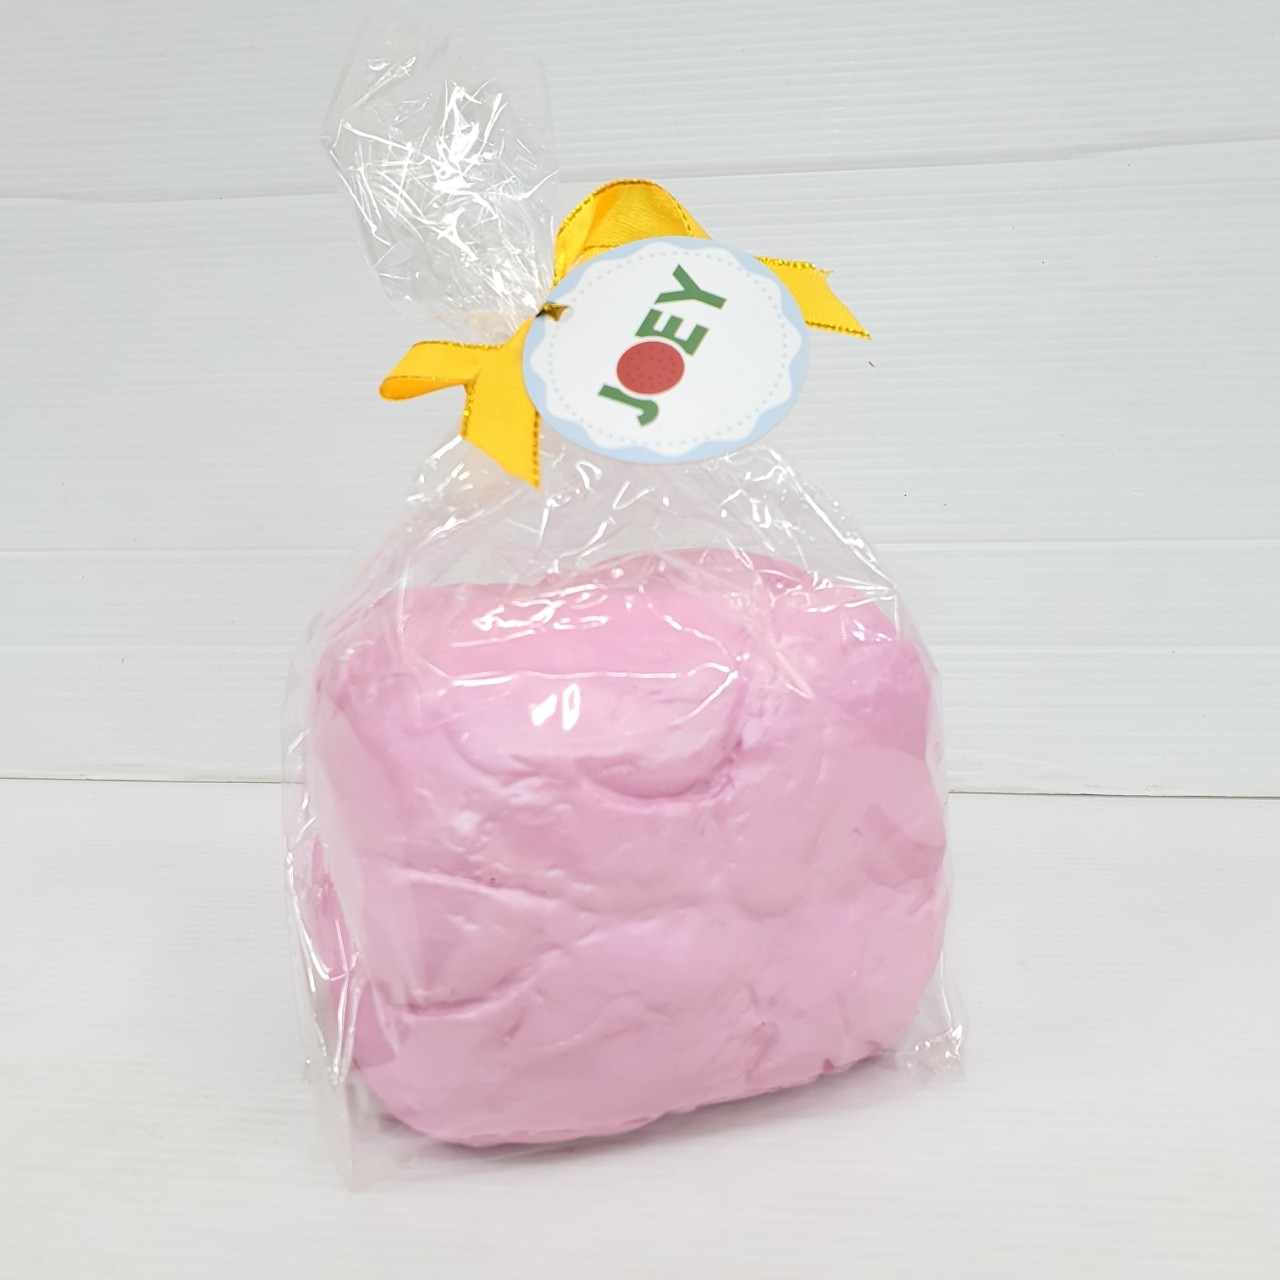 สกุชชี่ ขนมปังสีชมพู แบรนด์ โจอี้ Joey Squishy Bread Loaf Super Slow Rising - Pink